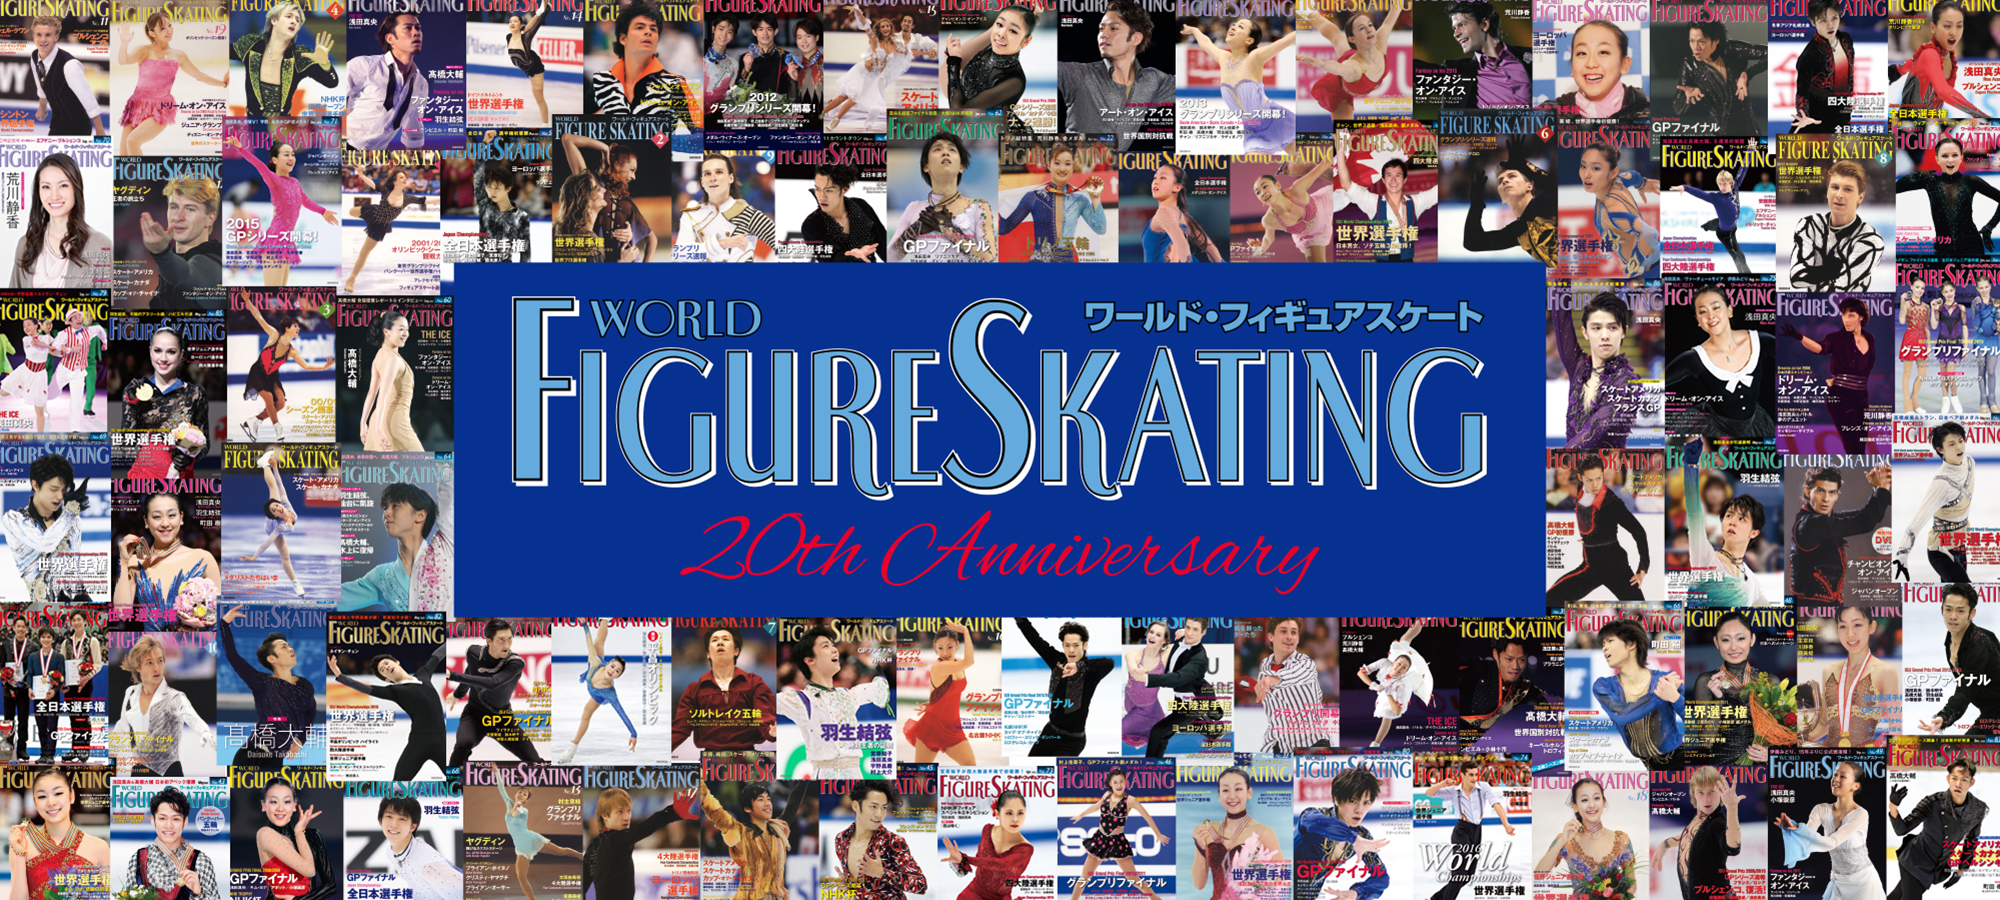 ワールド フィギュアスケート創刊周年記念 情報サイト World Figureskating th Anniversary Information